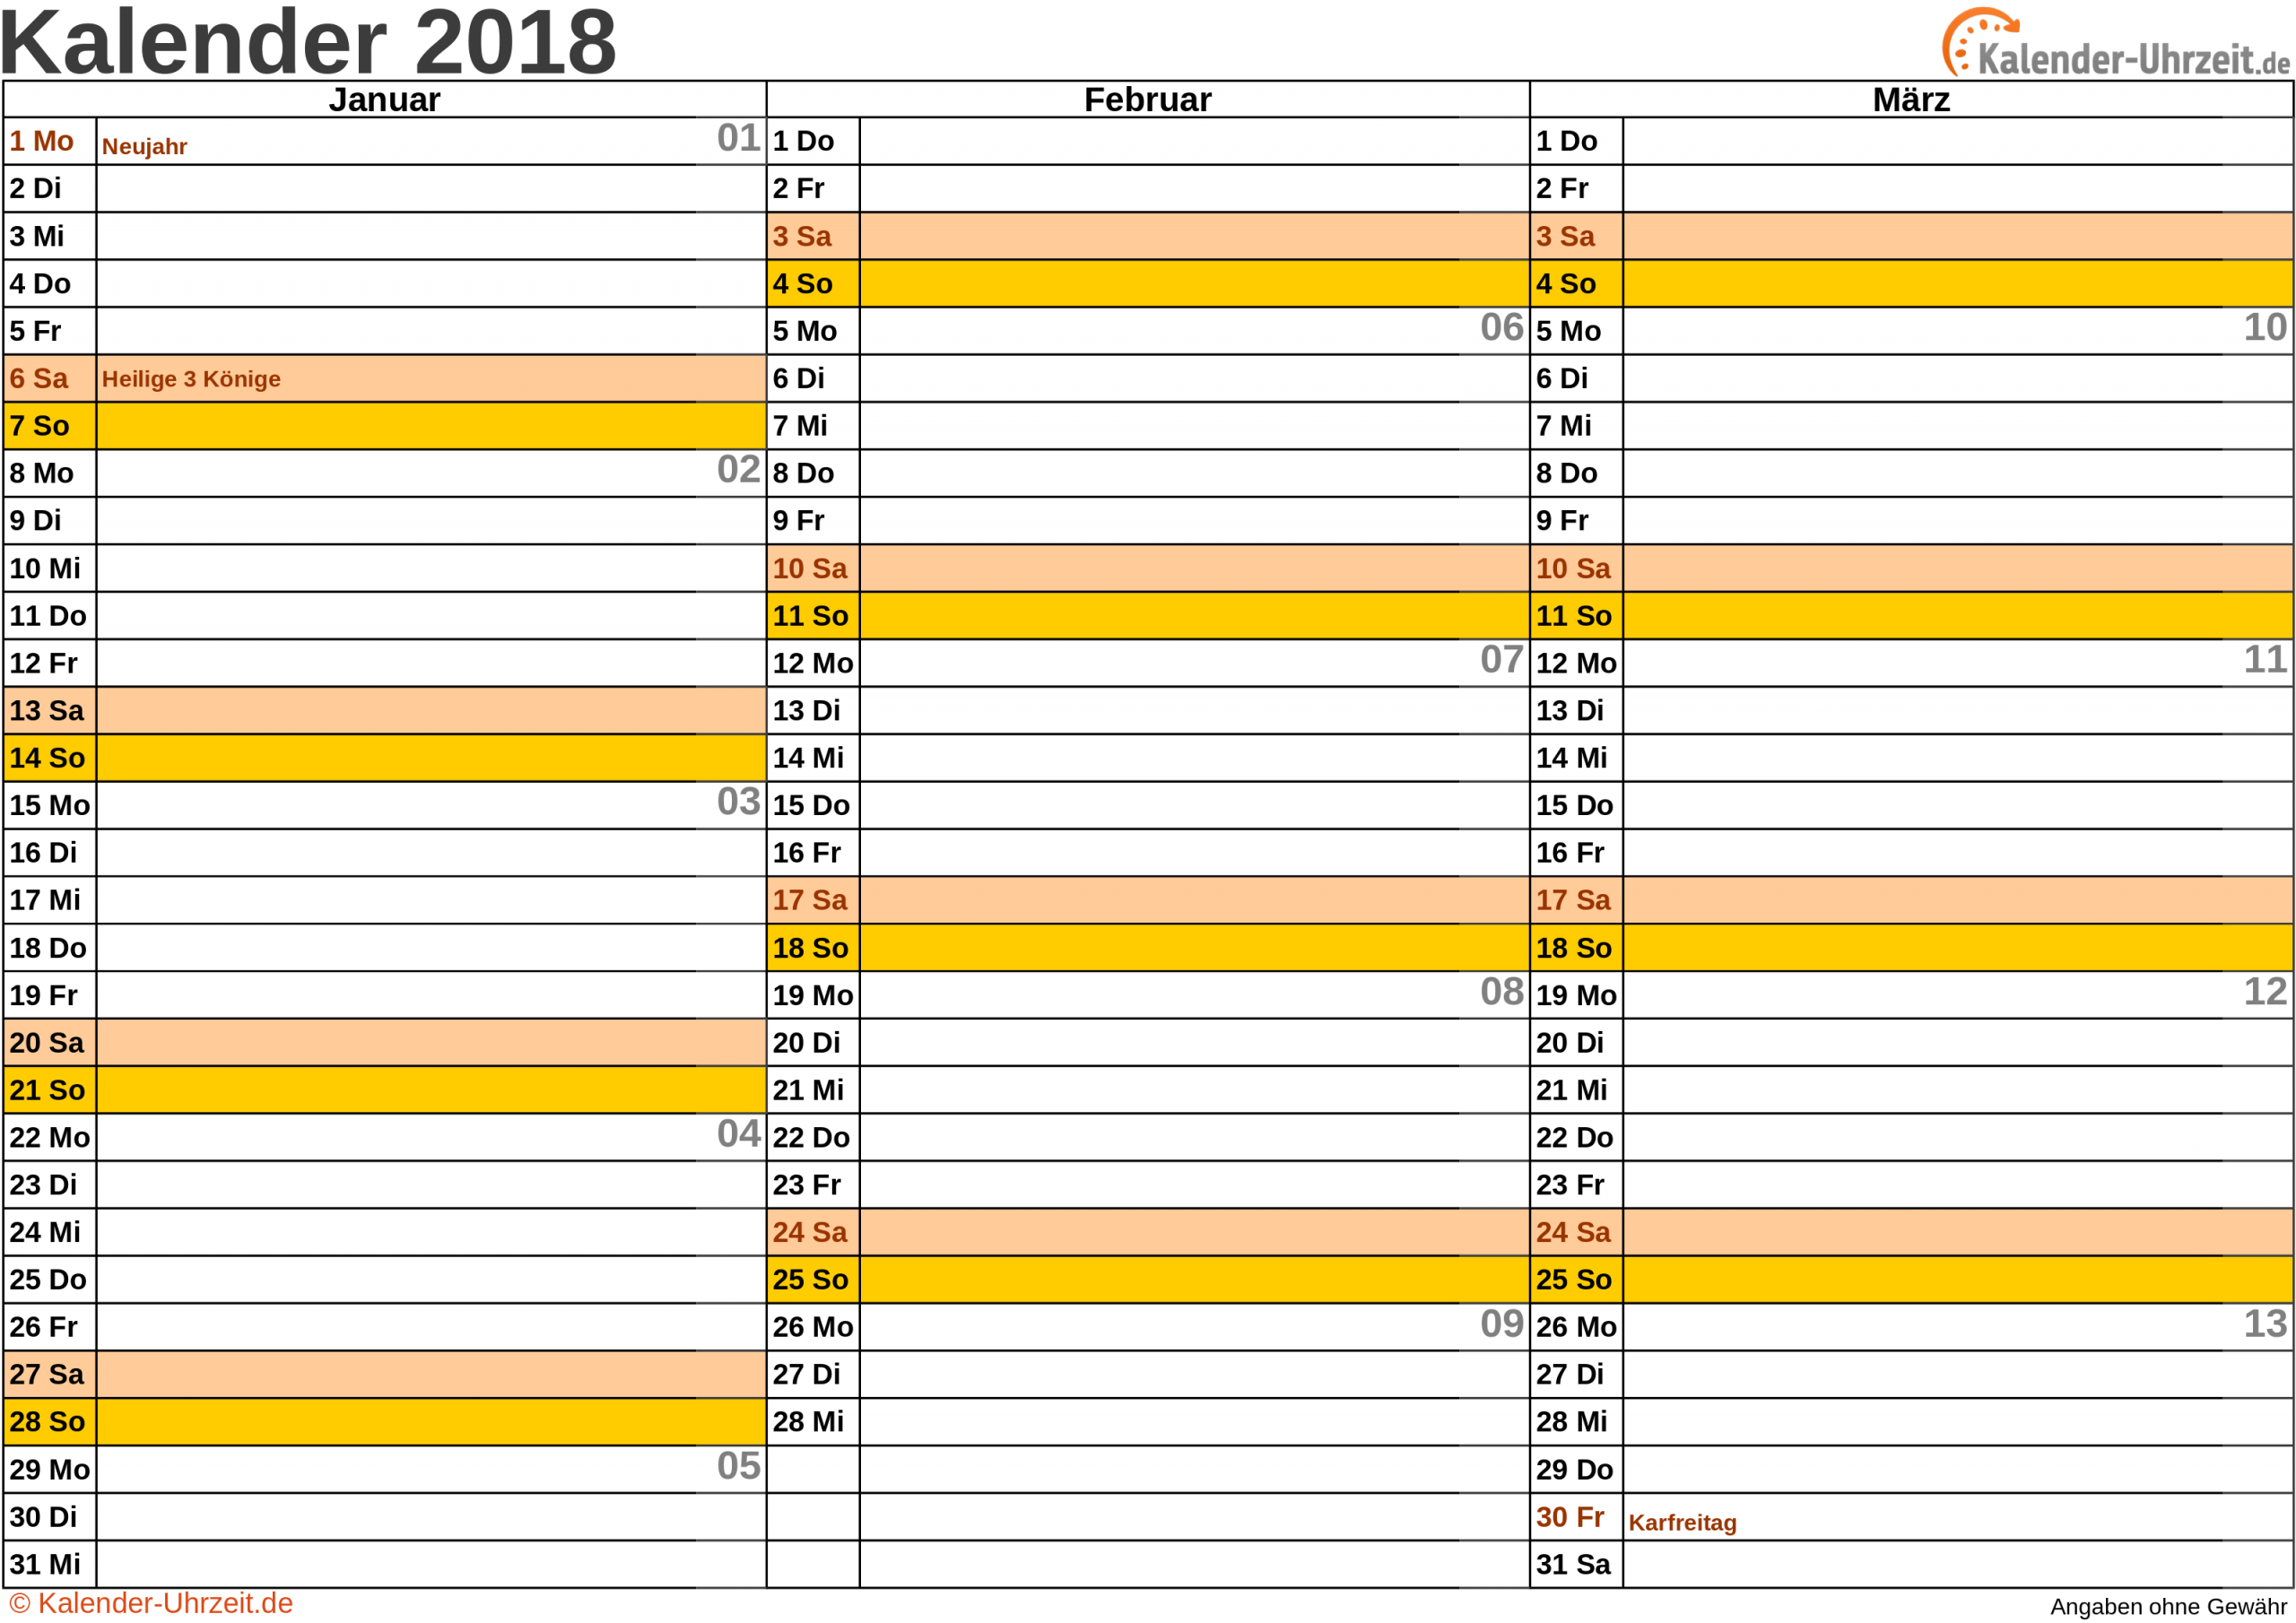 Kalender 2018 Zum Ausdrucken - Kostenlos ganzes Quartalskalender Zum Ausdrucken